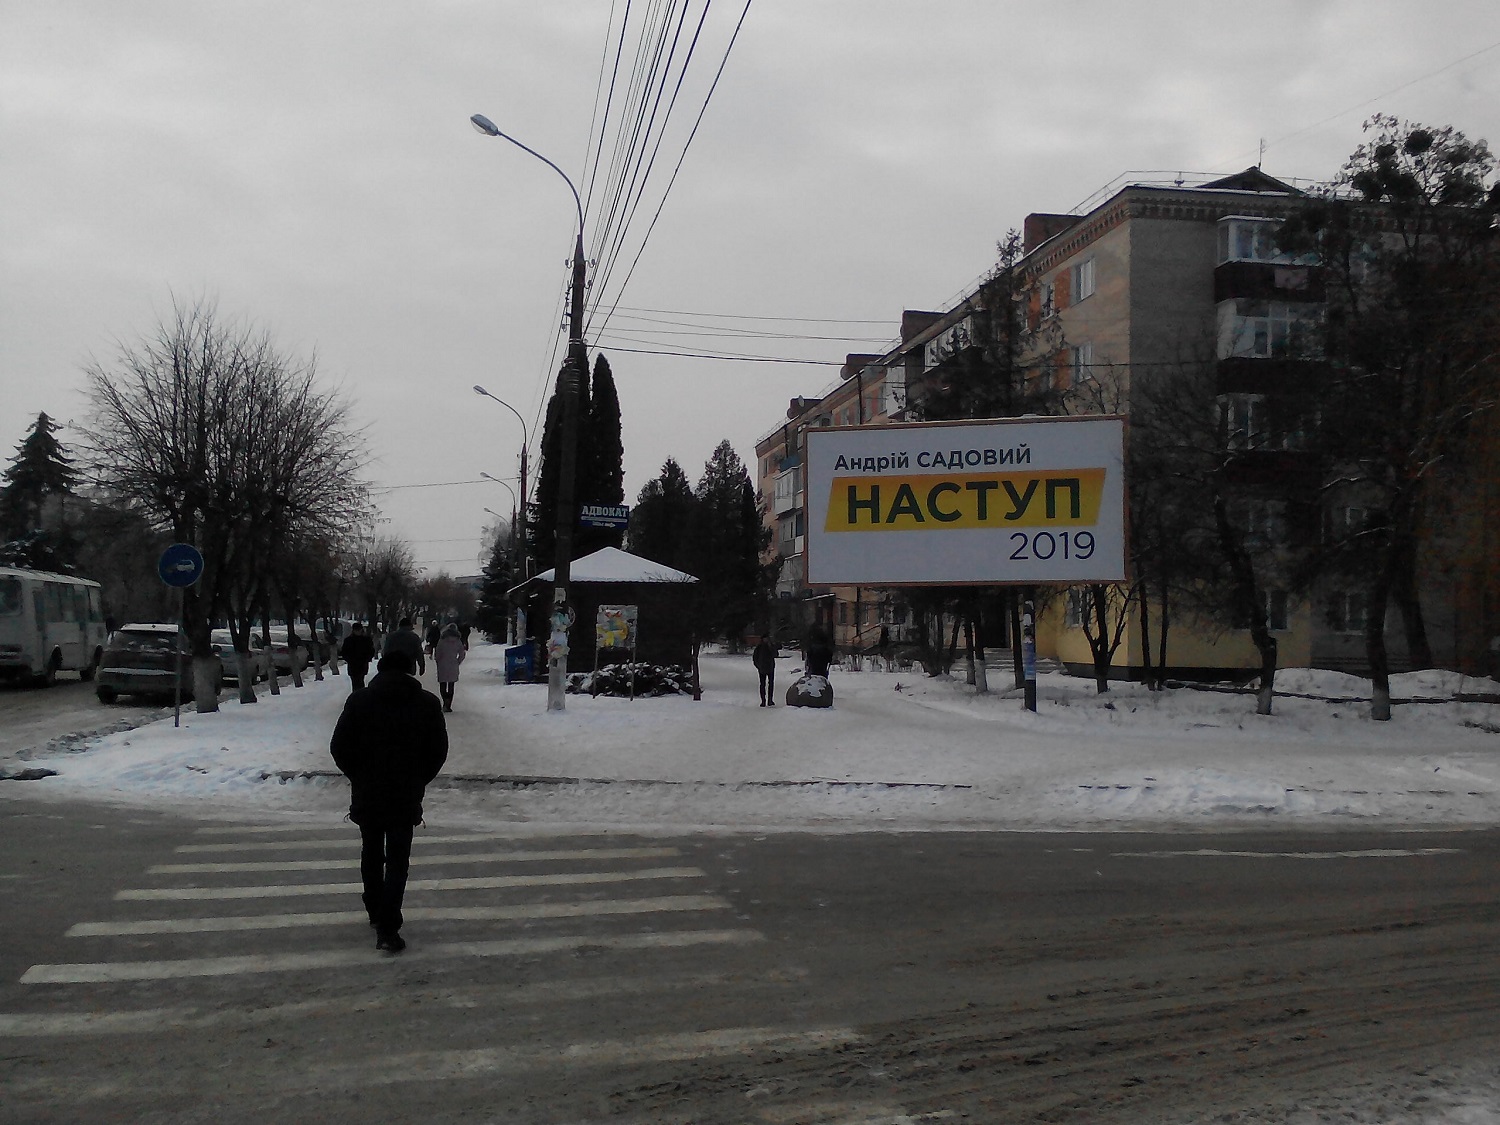 Sadovyi1 11 01 2019 Khmelnytskyi nezakonna agitatsia